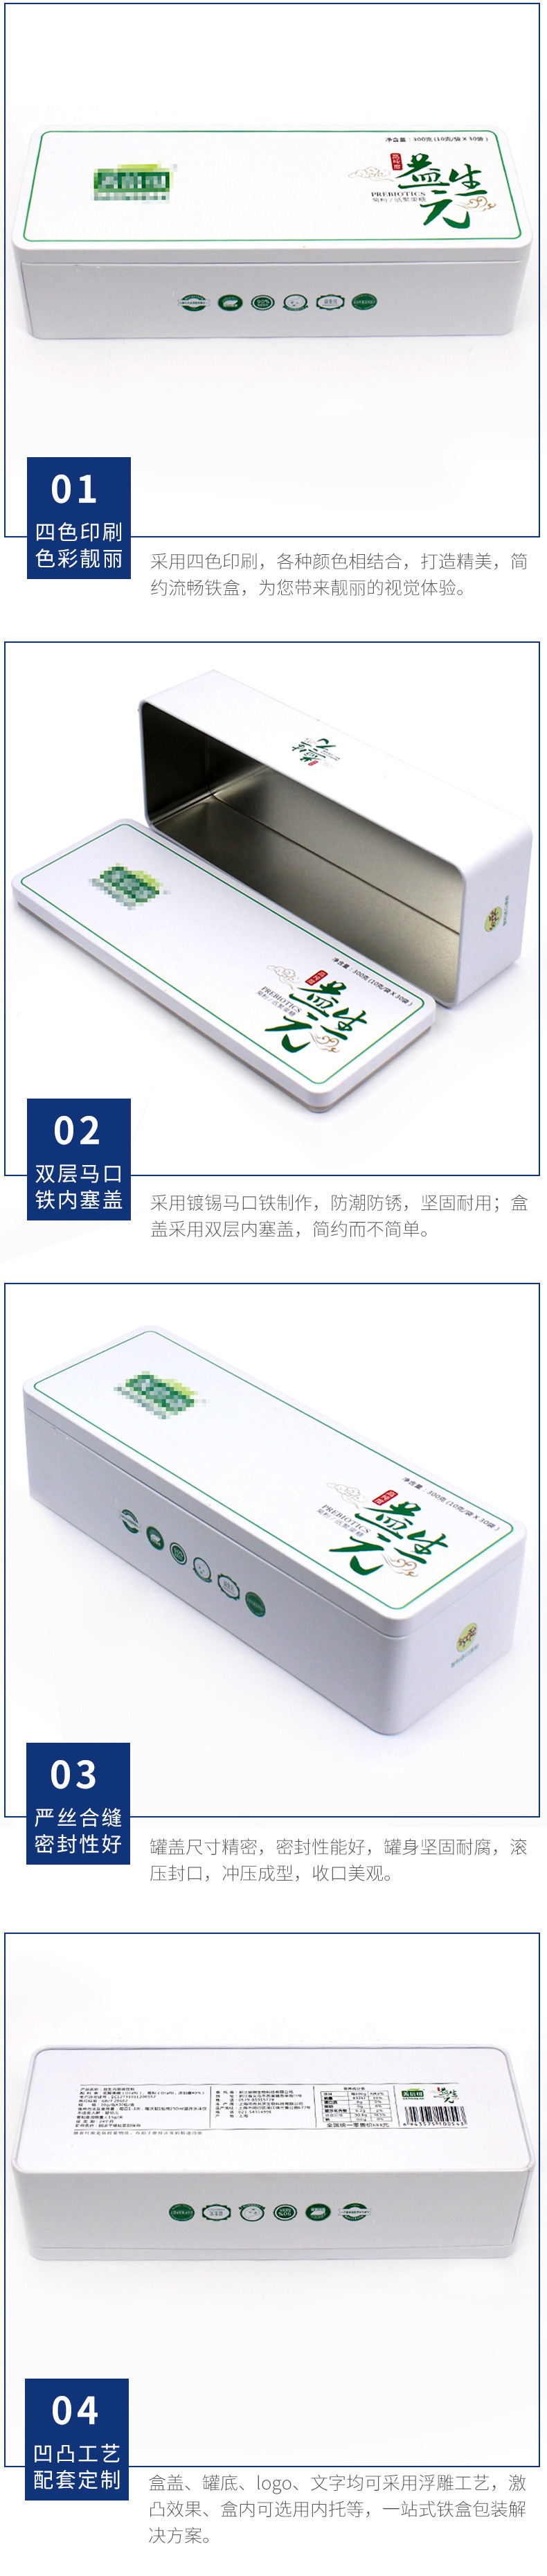 供应酵素医药铁盒包装 长方形菊粉铁盒 麦氏铁盒包装制品有限公司示例图14